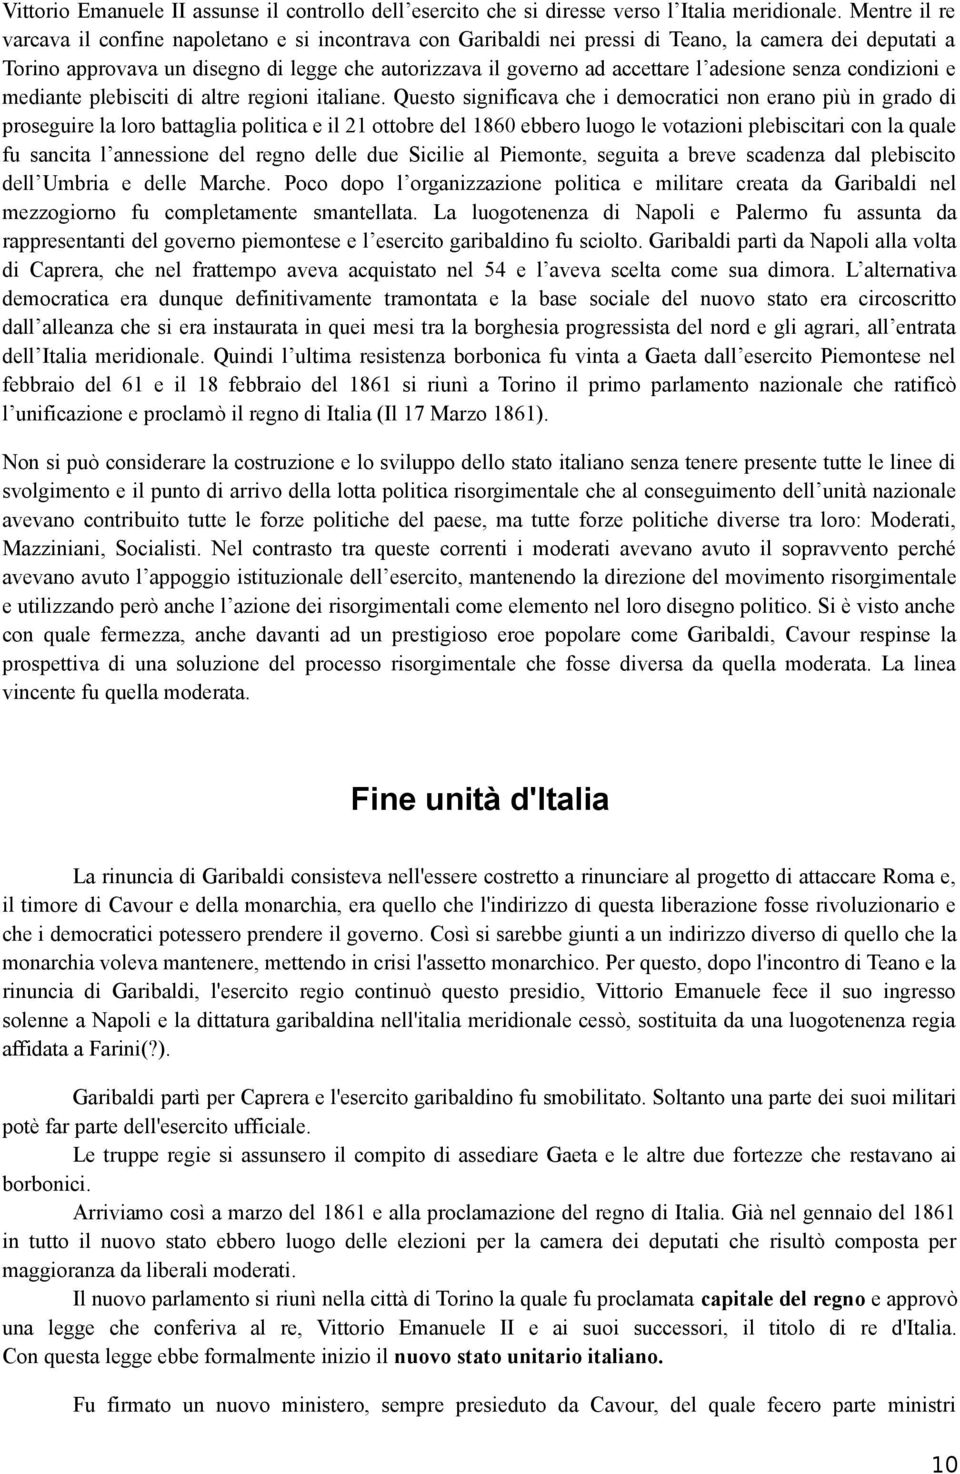 adesione senza condizioni e mediante plebisciti di altre regioni italiane.